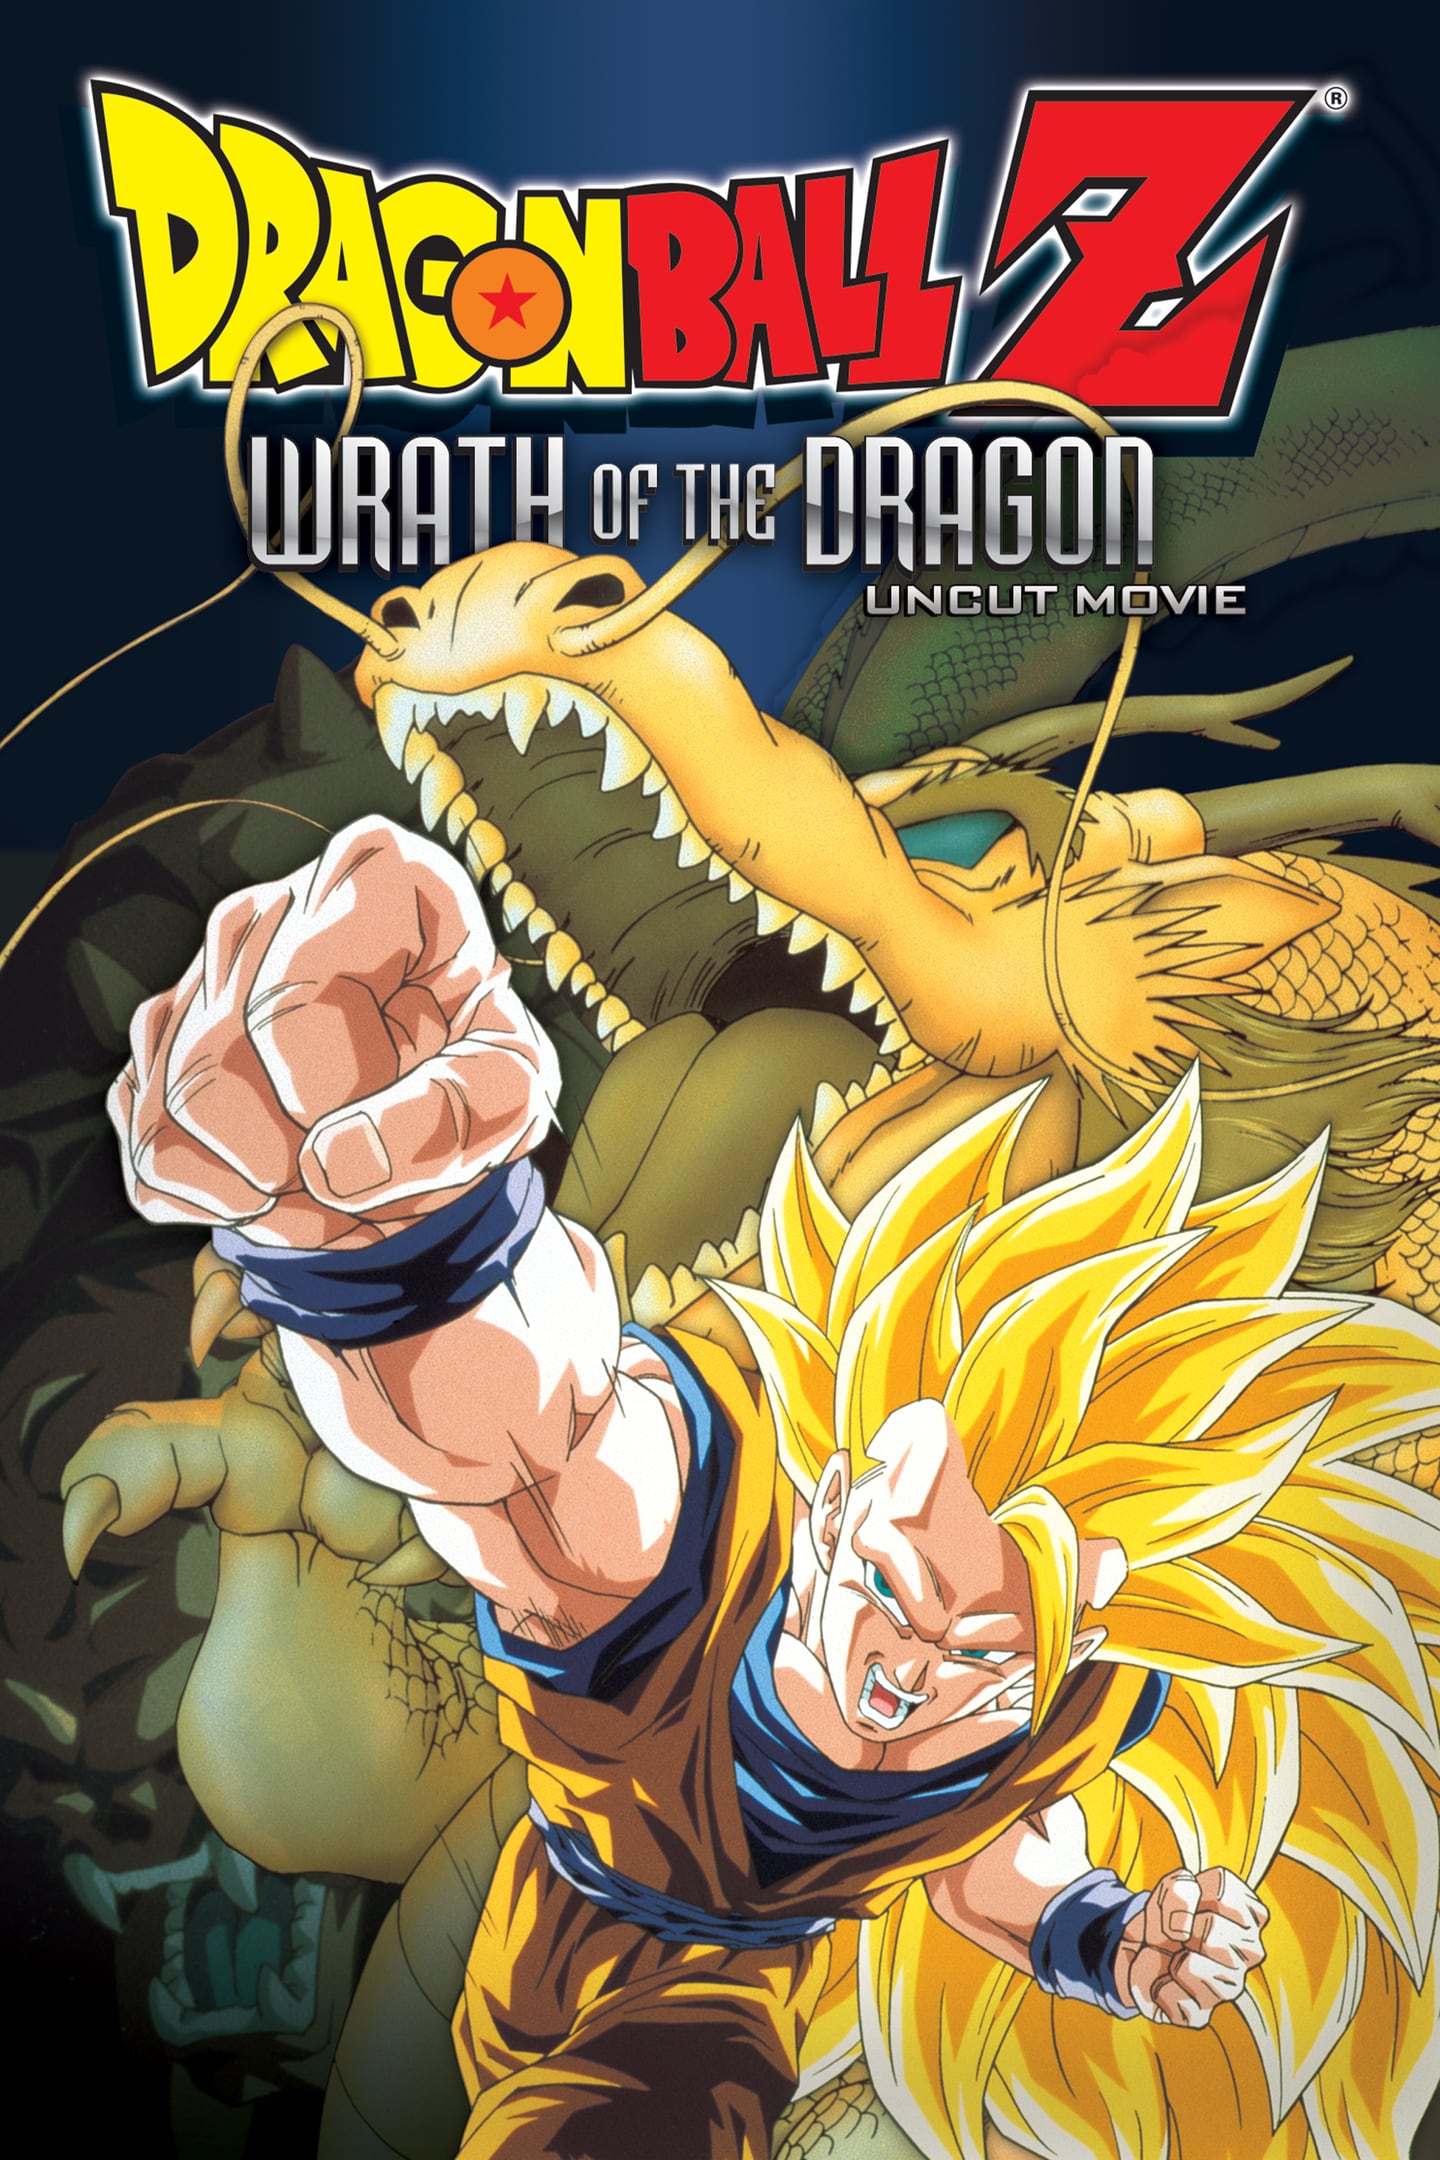 'Dragon Ball Z: El ataque del dragón' fue dirigida por Mitsuo Hashimoto y se estrenó en 1995.